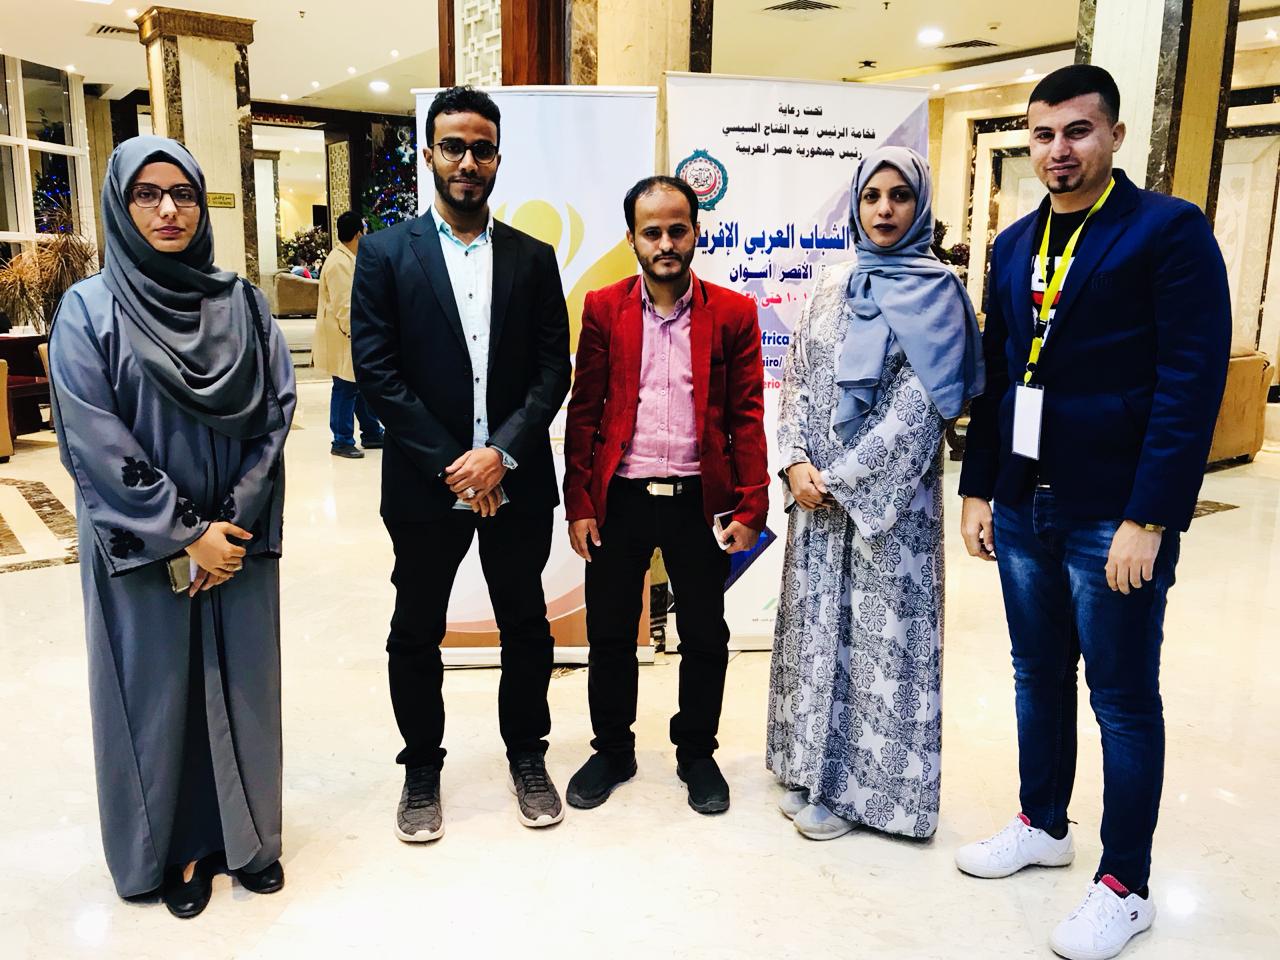 وصول الوفد الشبابي اليمني الى المركز الأولمبي بالمعادي للمشاركة ضمن فعاليات منتدى الشباب العربي الإفريقي